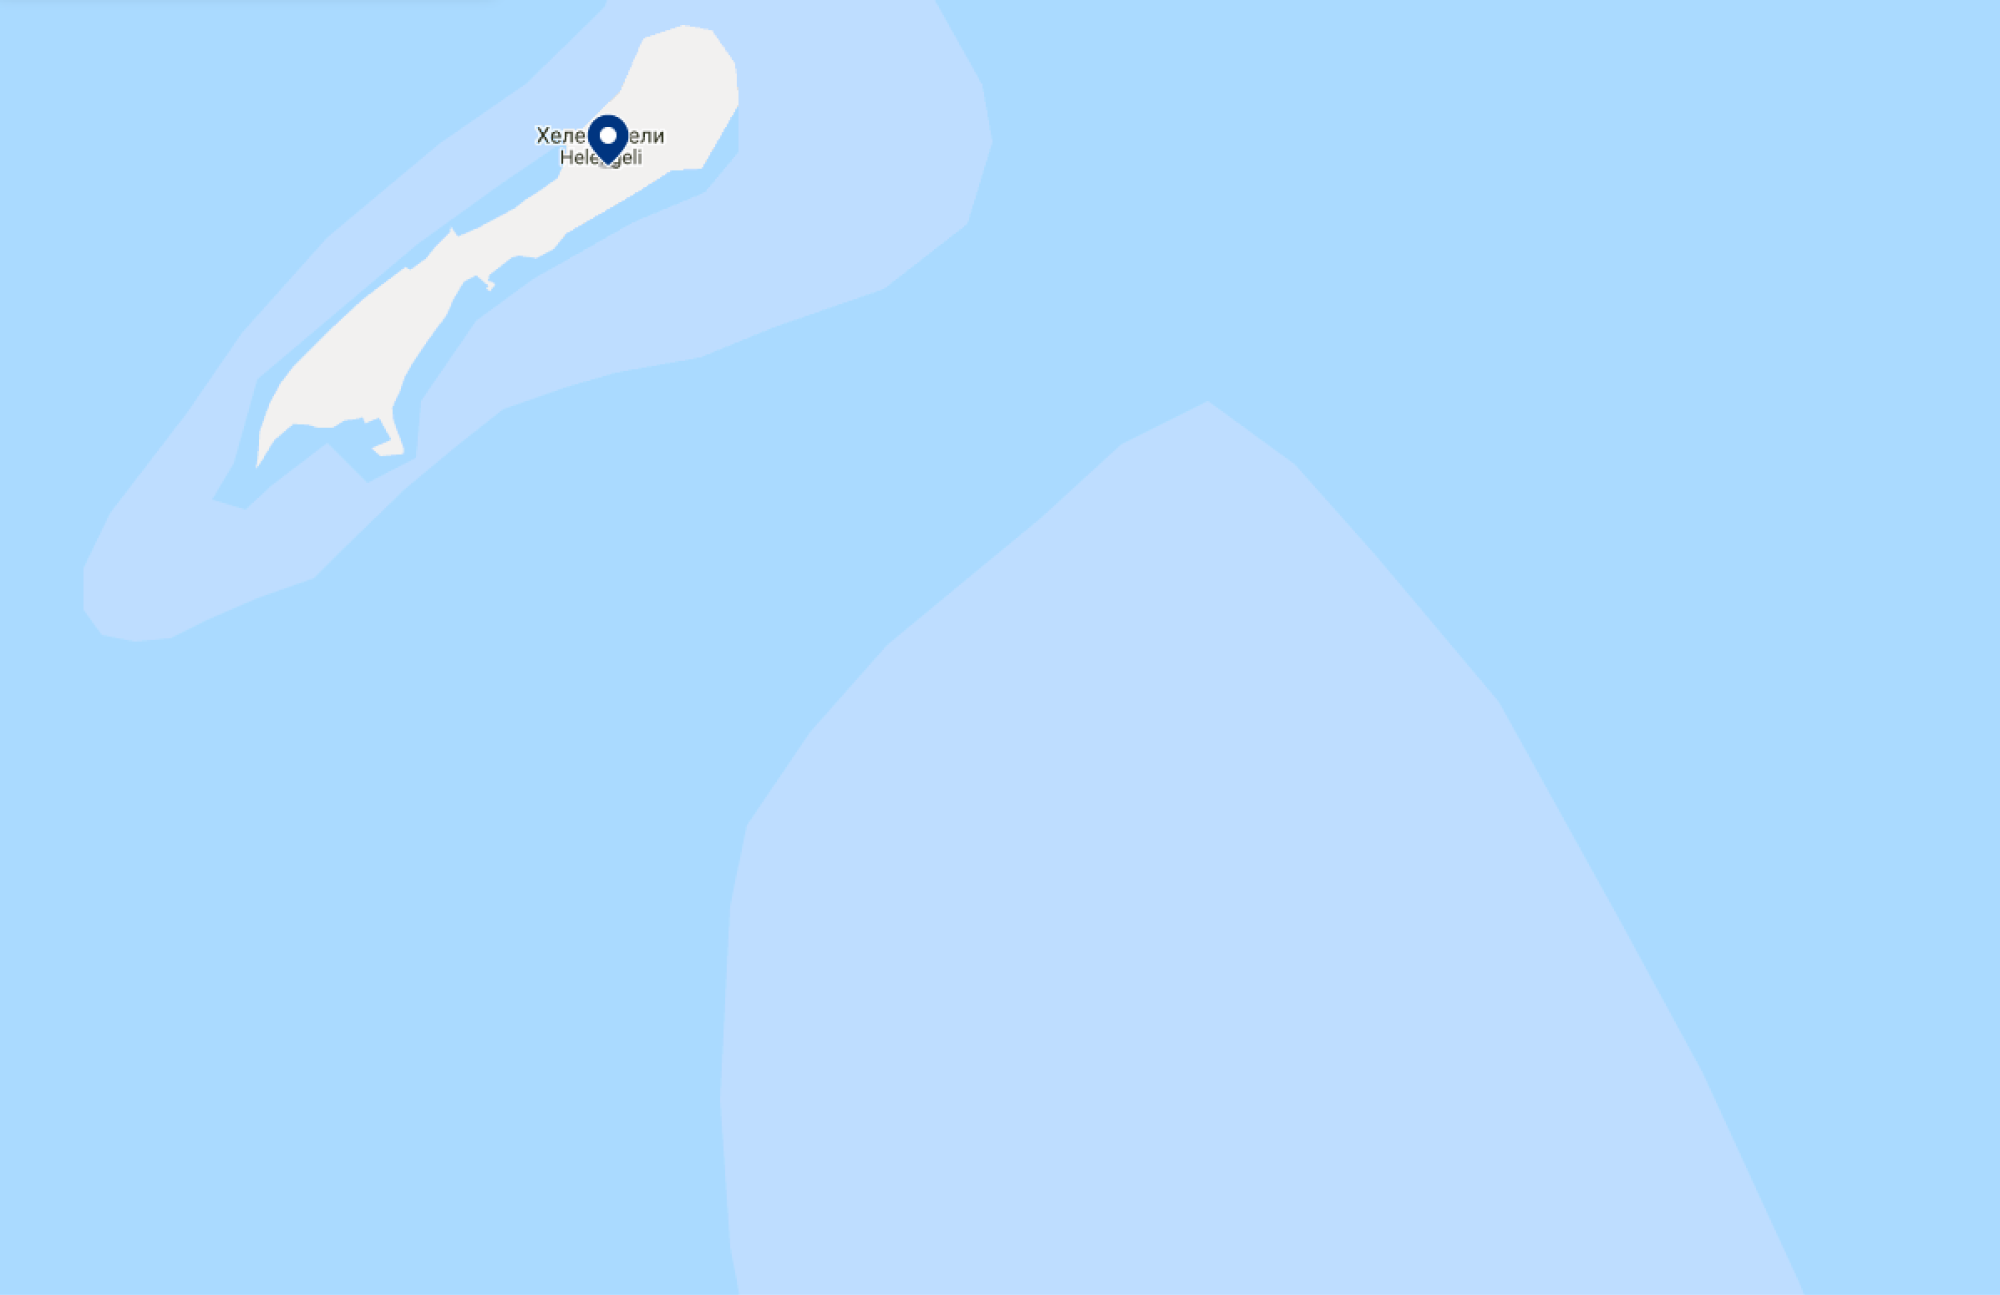 Остров-резорт Хеленджели на «Гугл-картах». Источник: google.com/maps